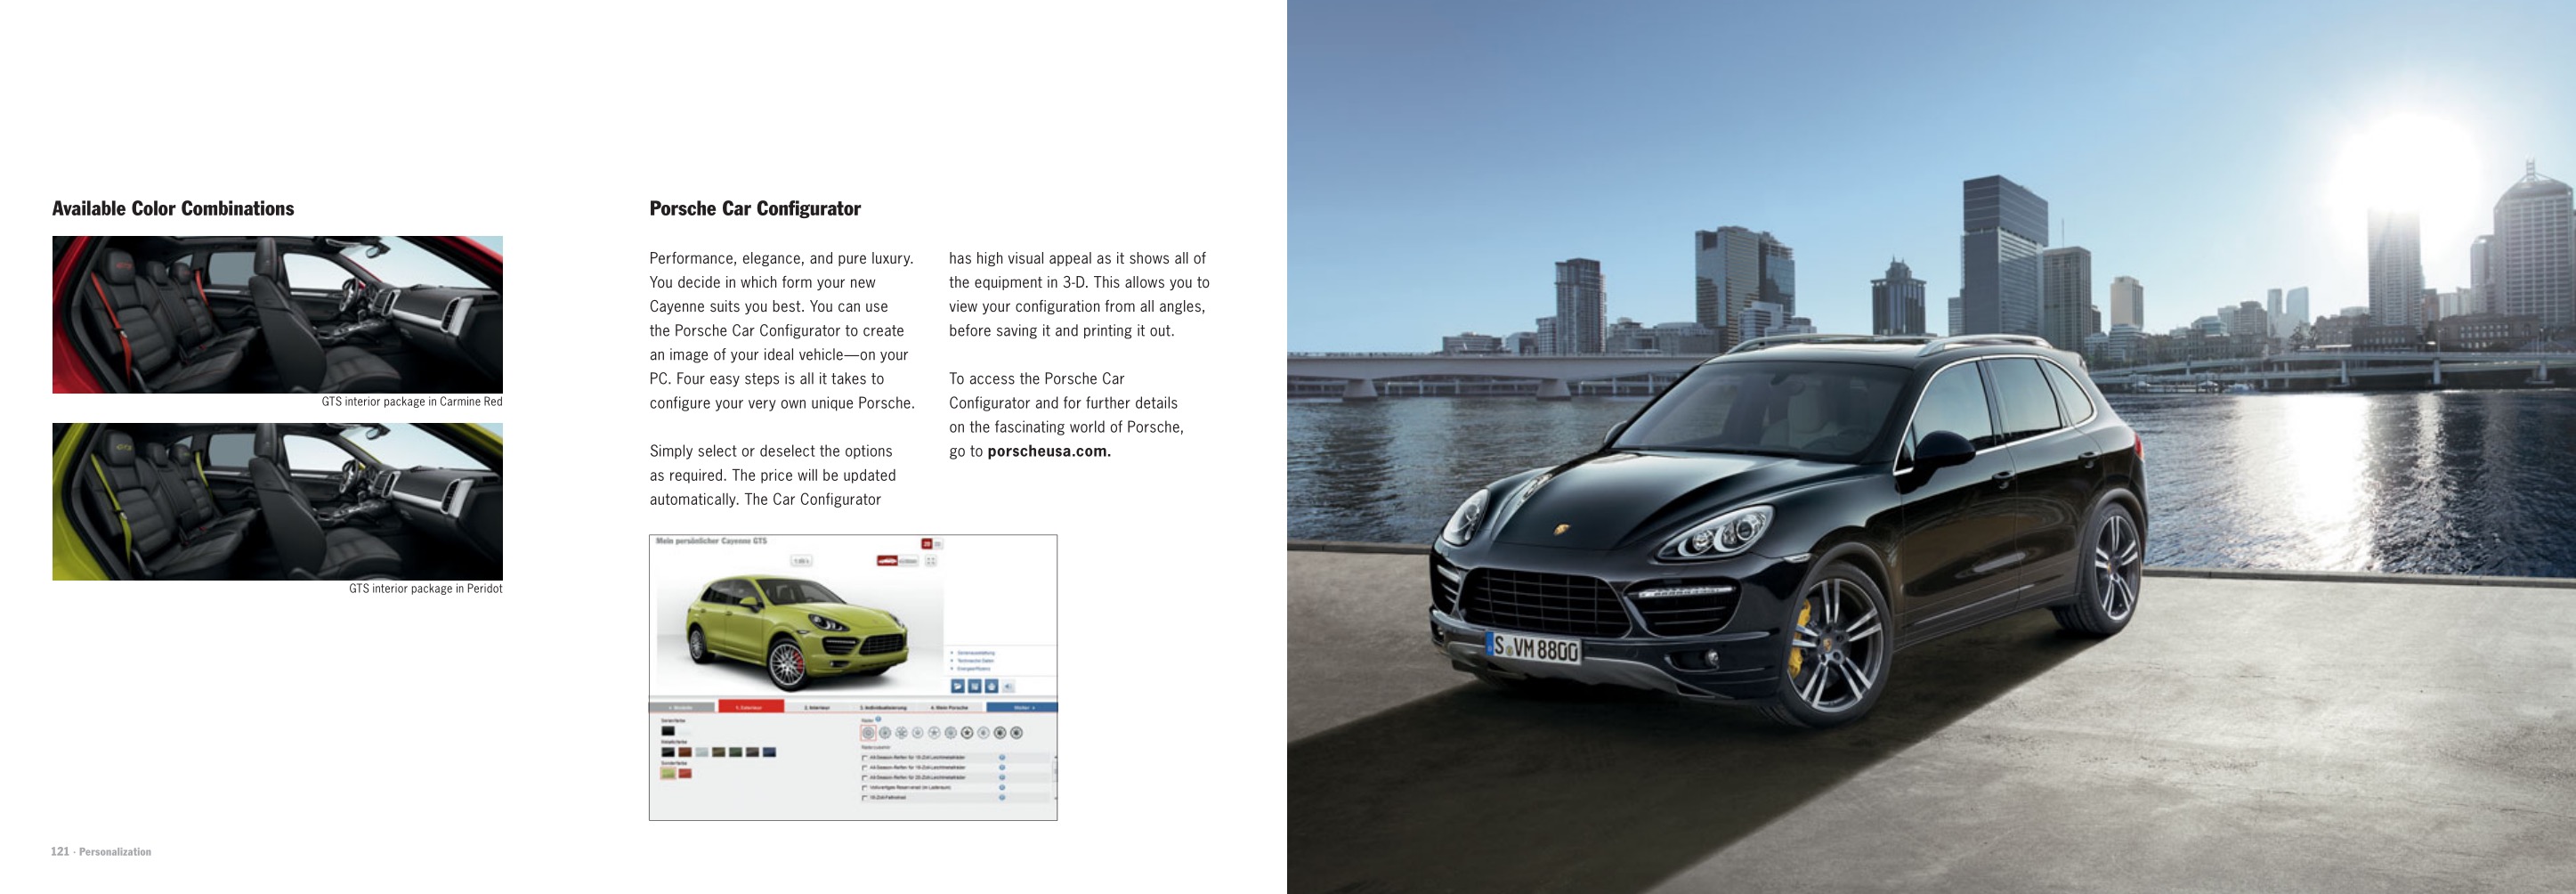 2013 Porsche Cayenne Brochure Page 59